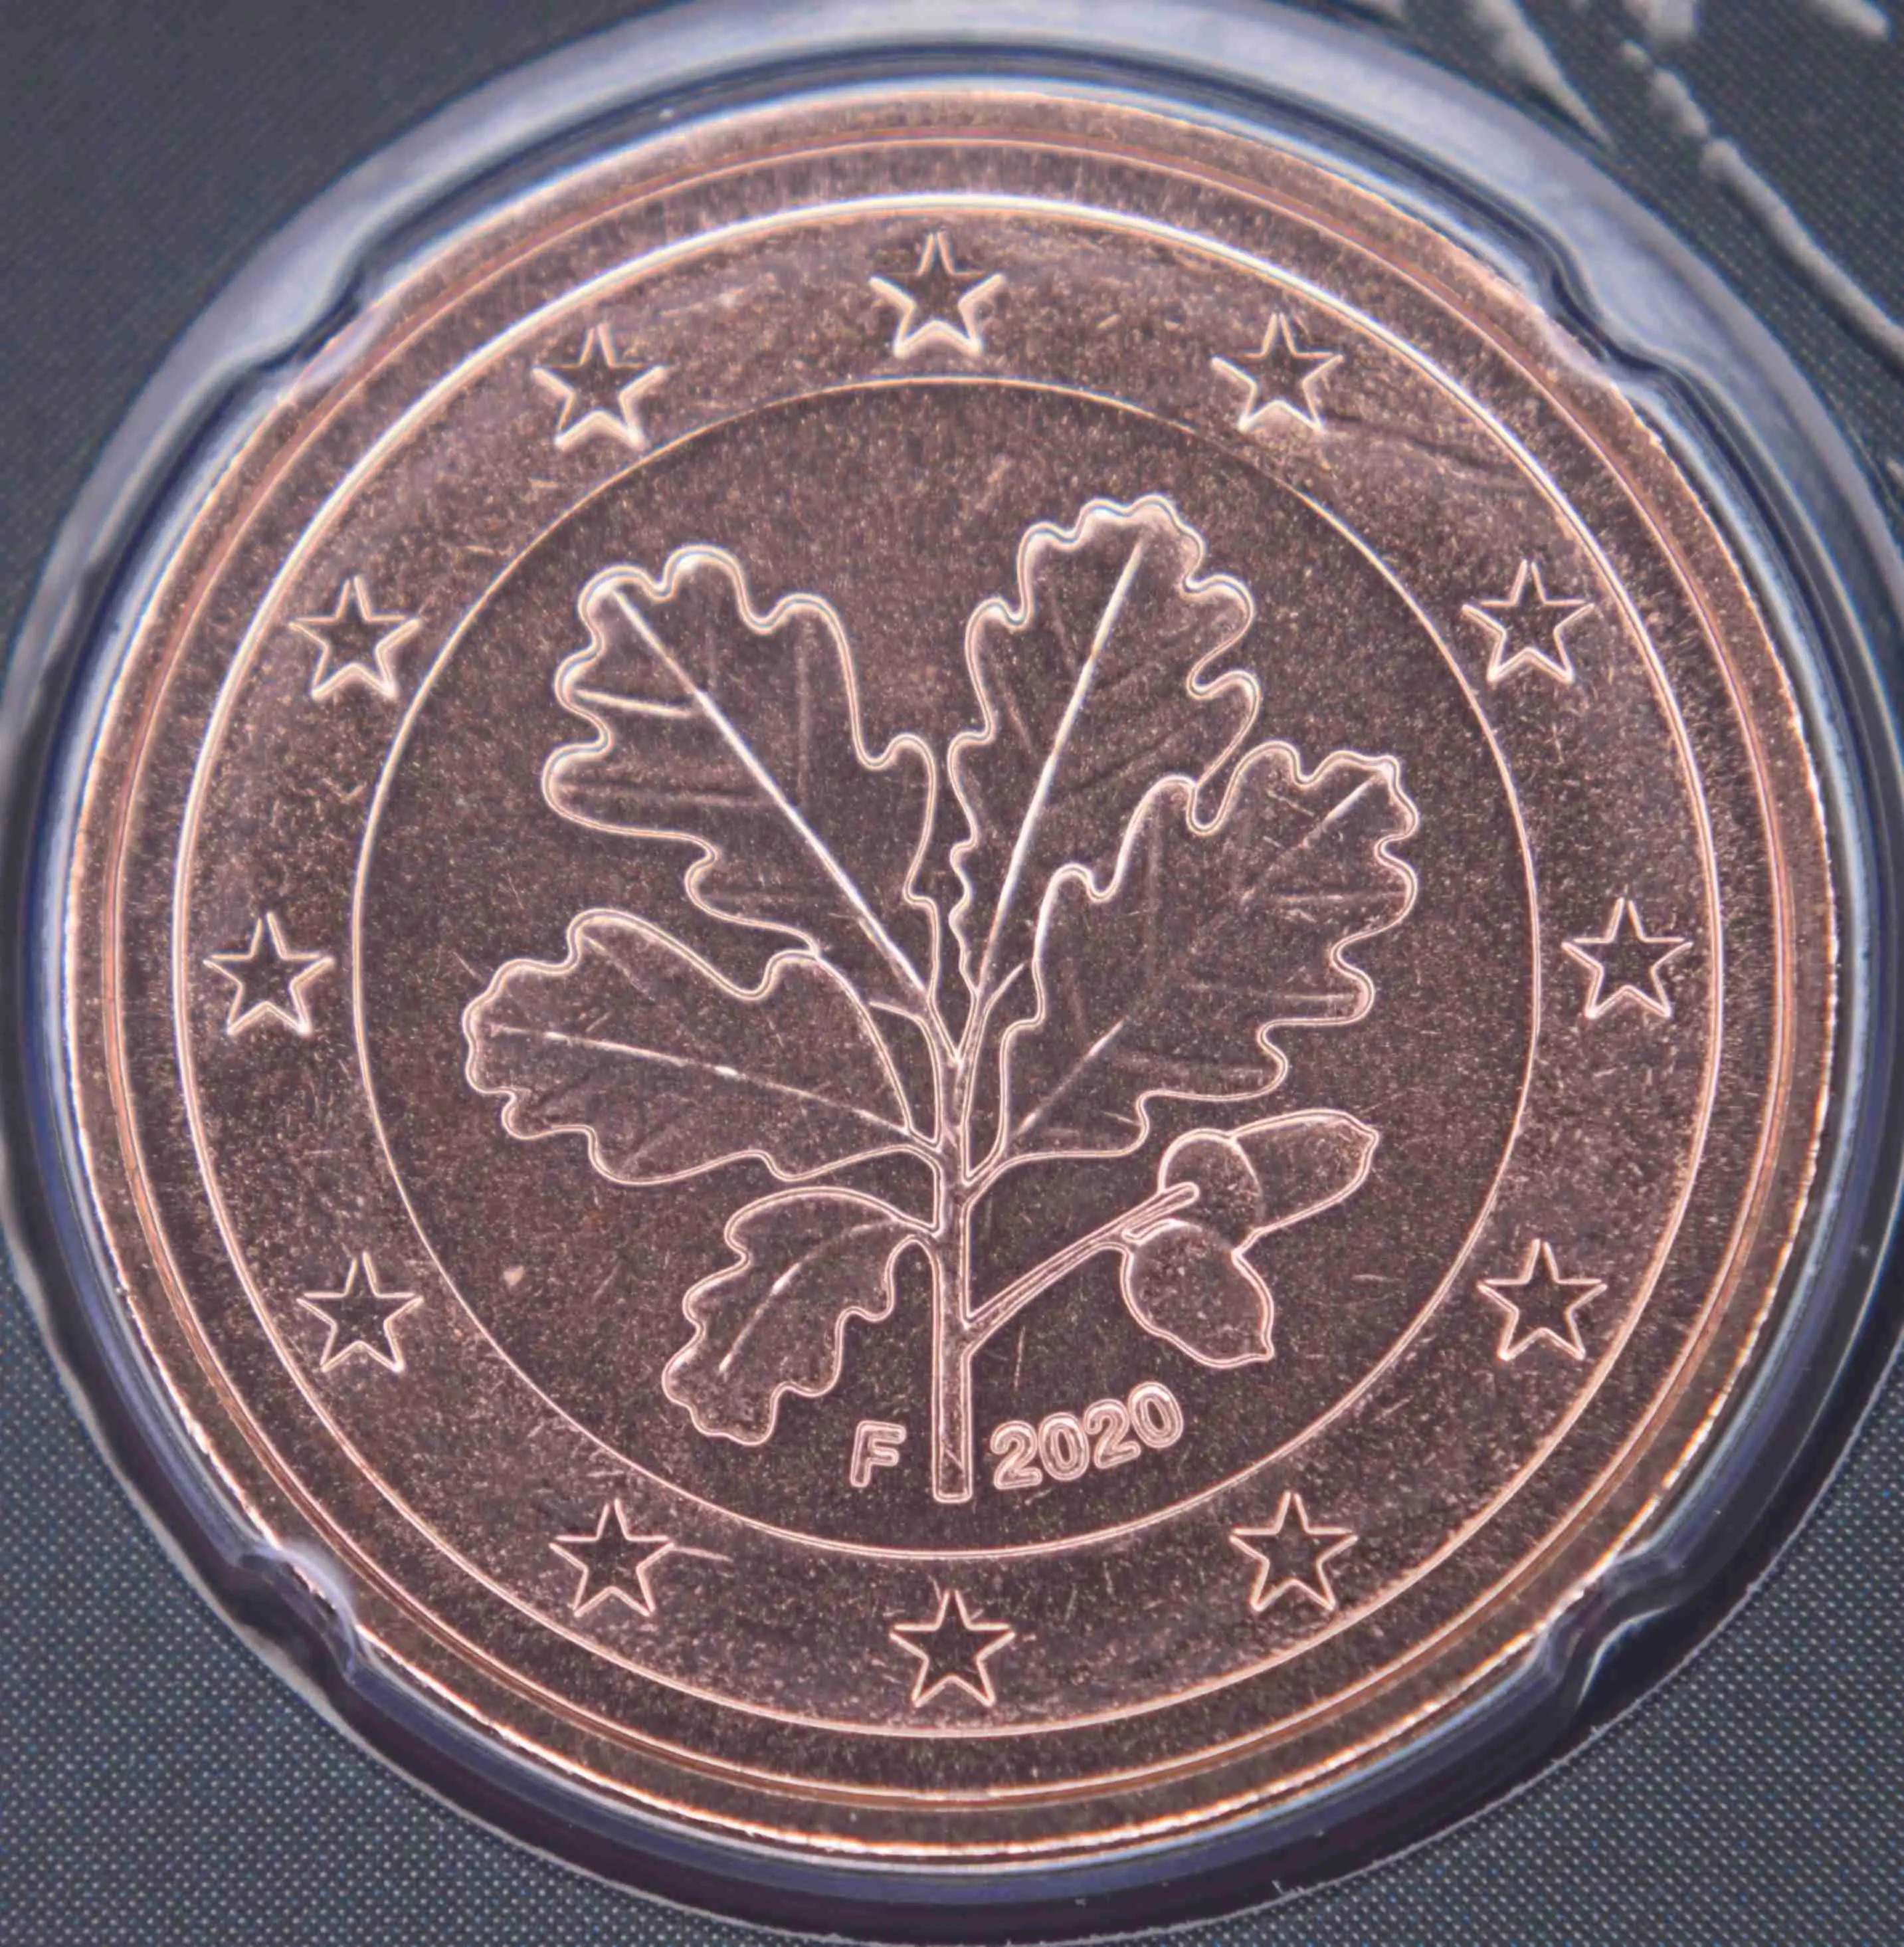 Deutschland 5 Euro Cent 2020 "A" /Umlaufmünze 